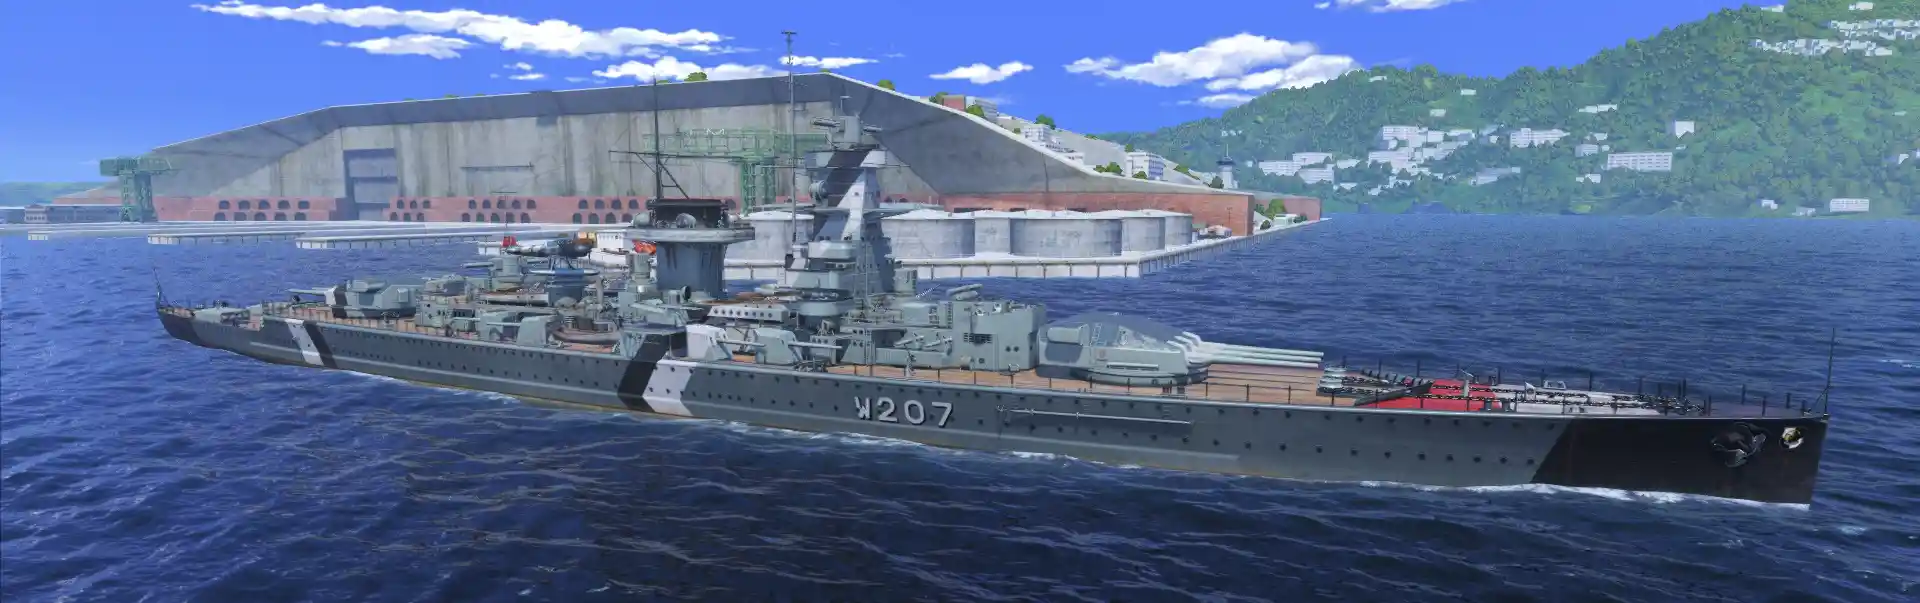 Admiral Graf Spee - World of Warships Wiki*